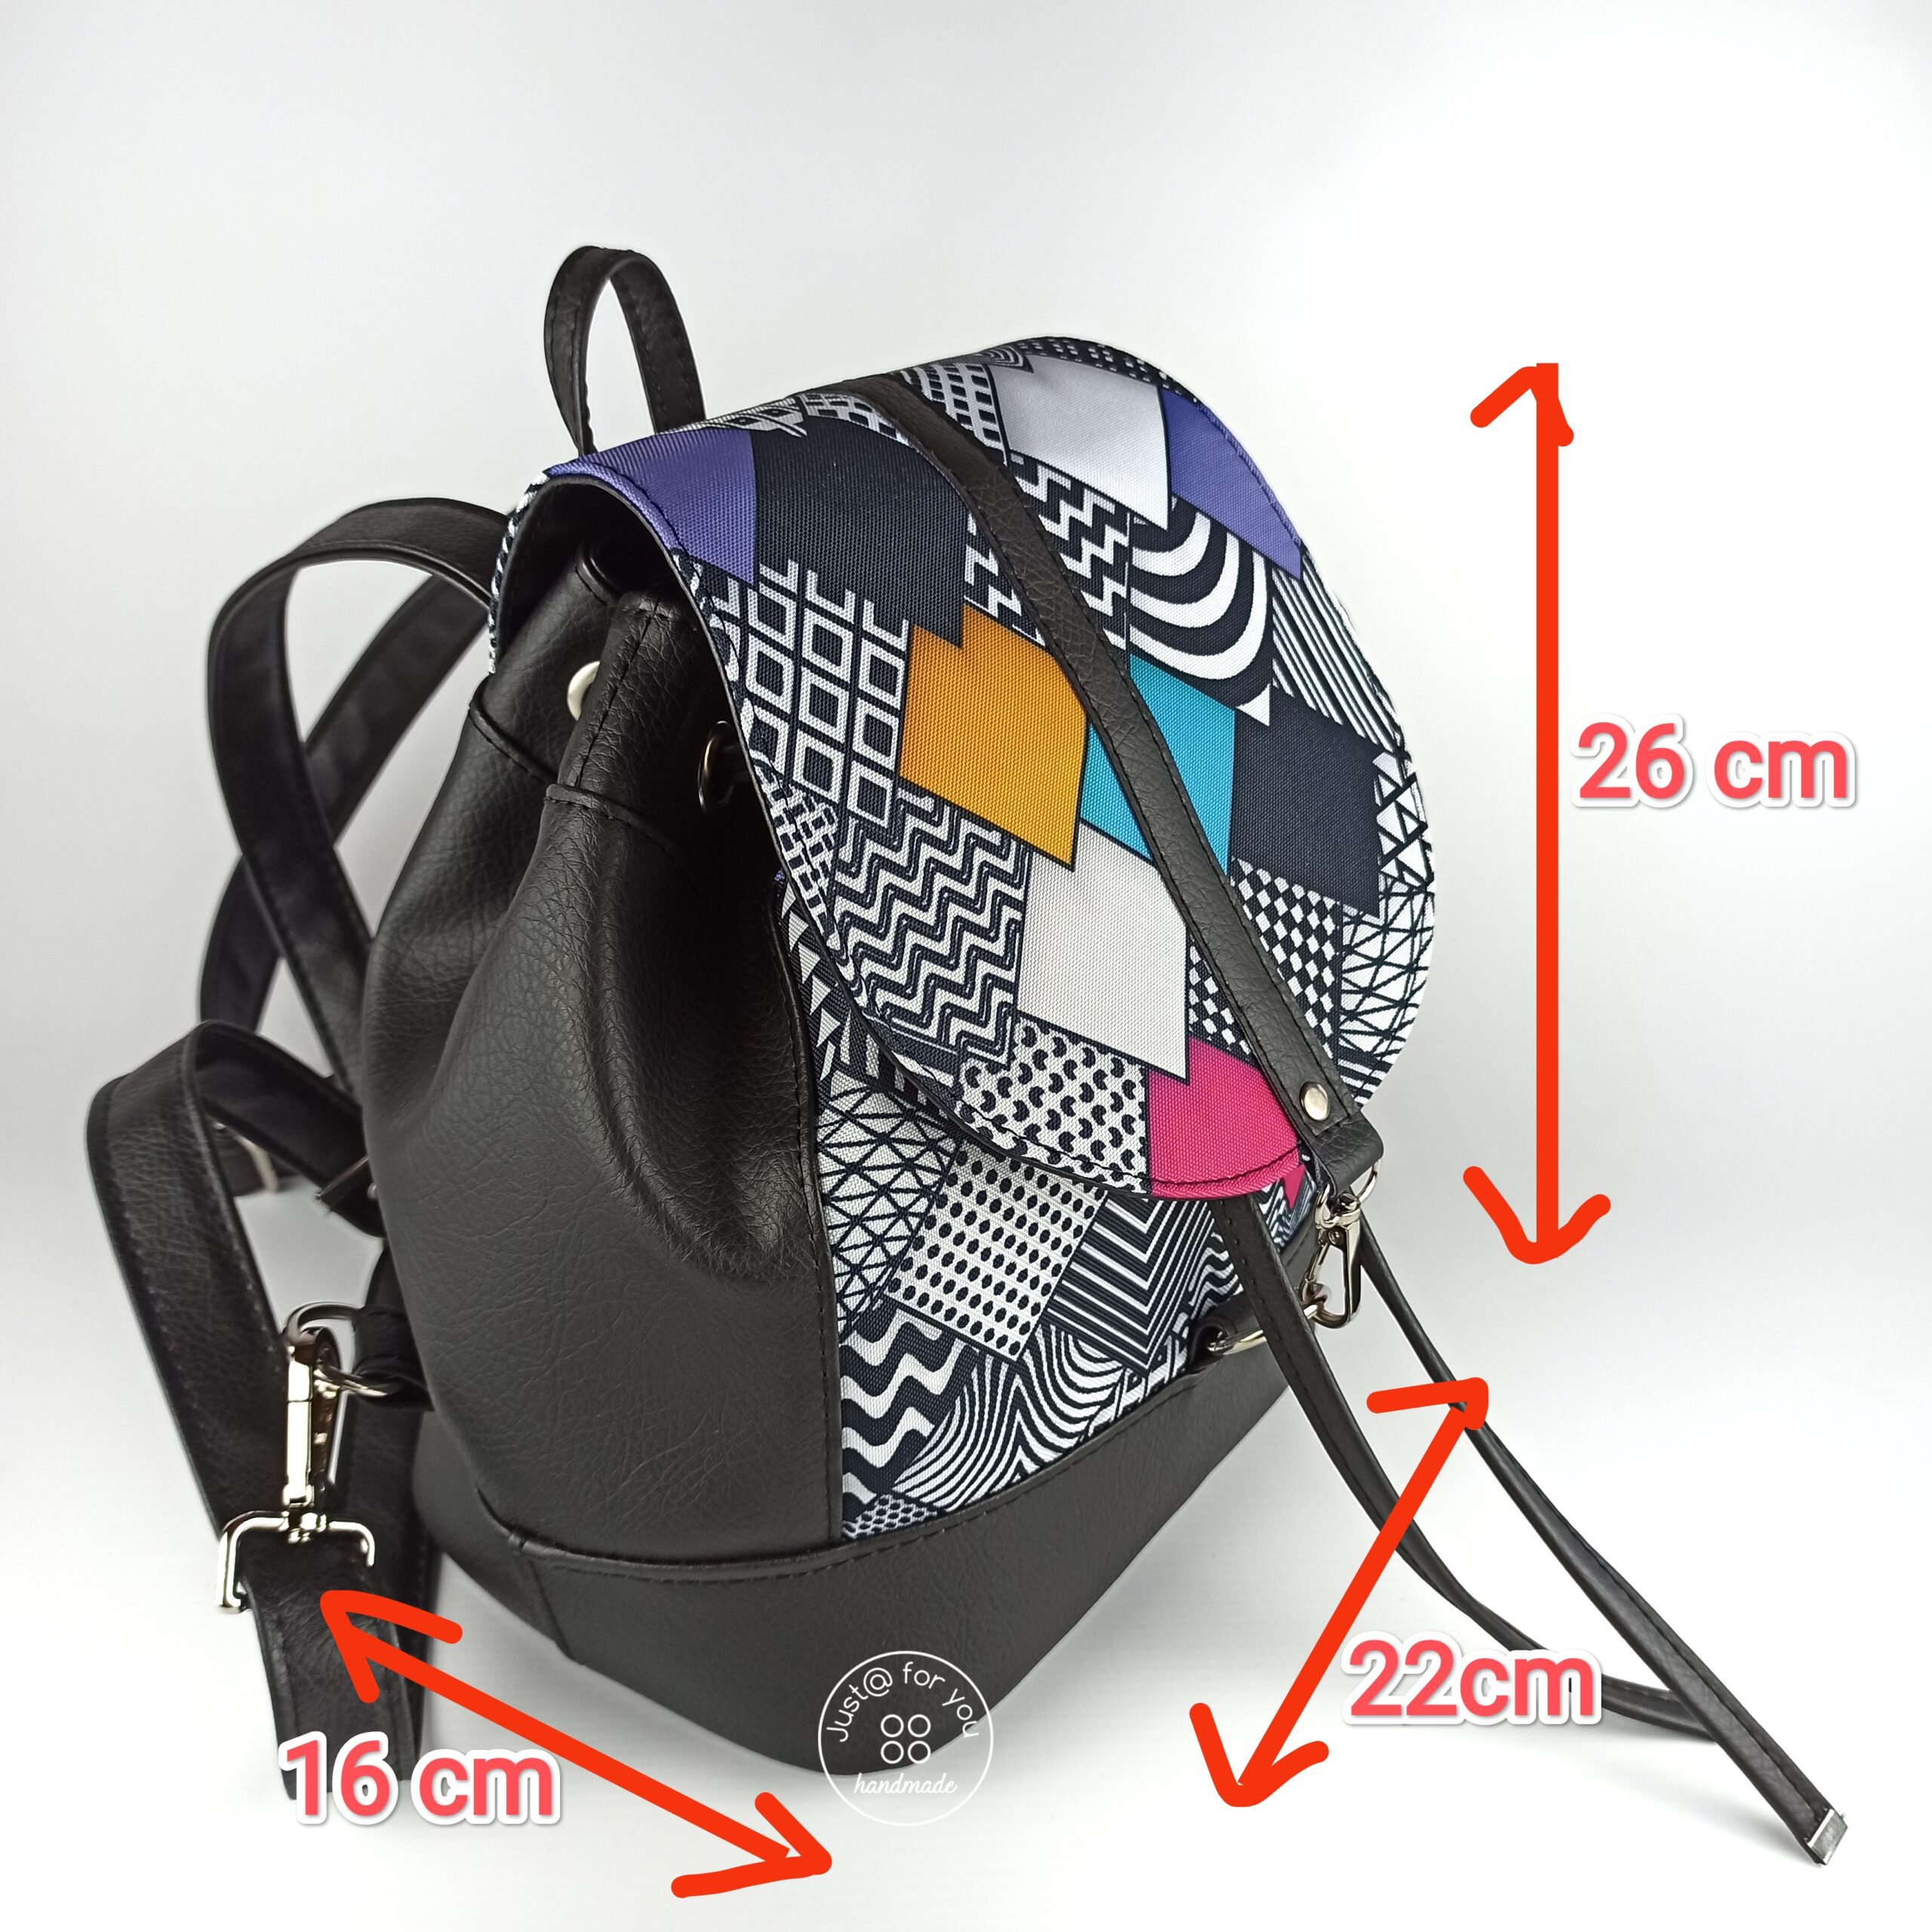 Plecak typu bucket z czarnej ekoskóry, kolorowy wzór.